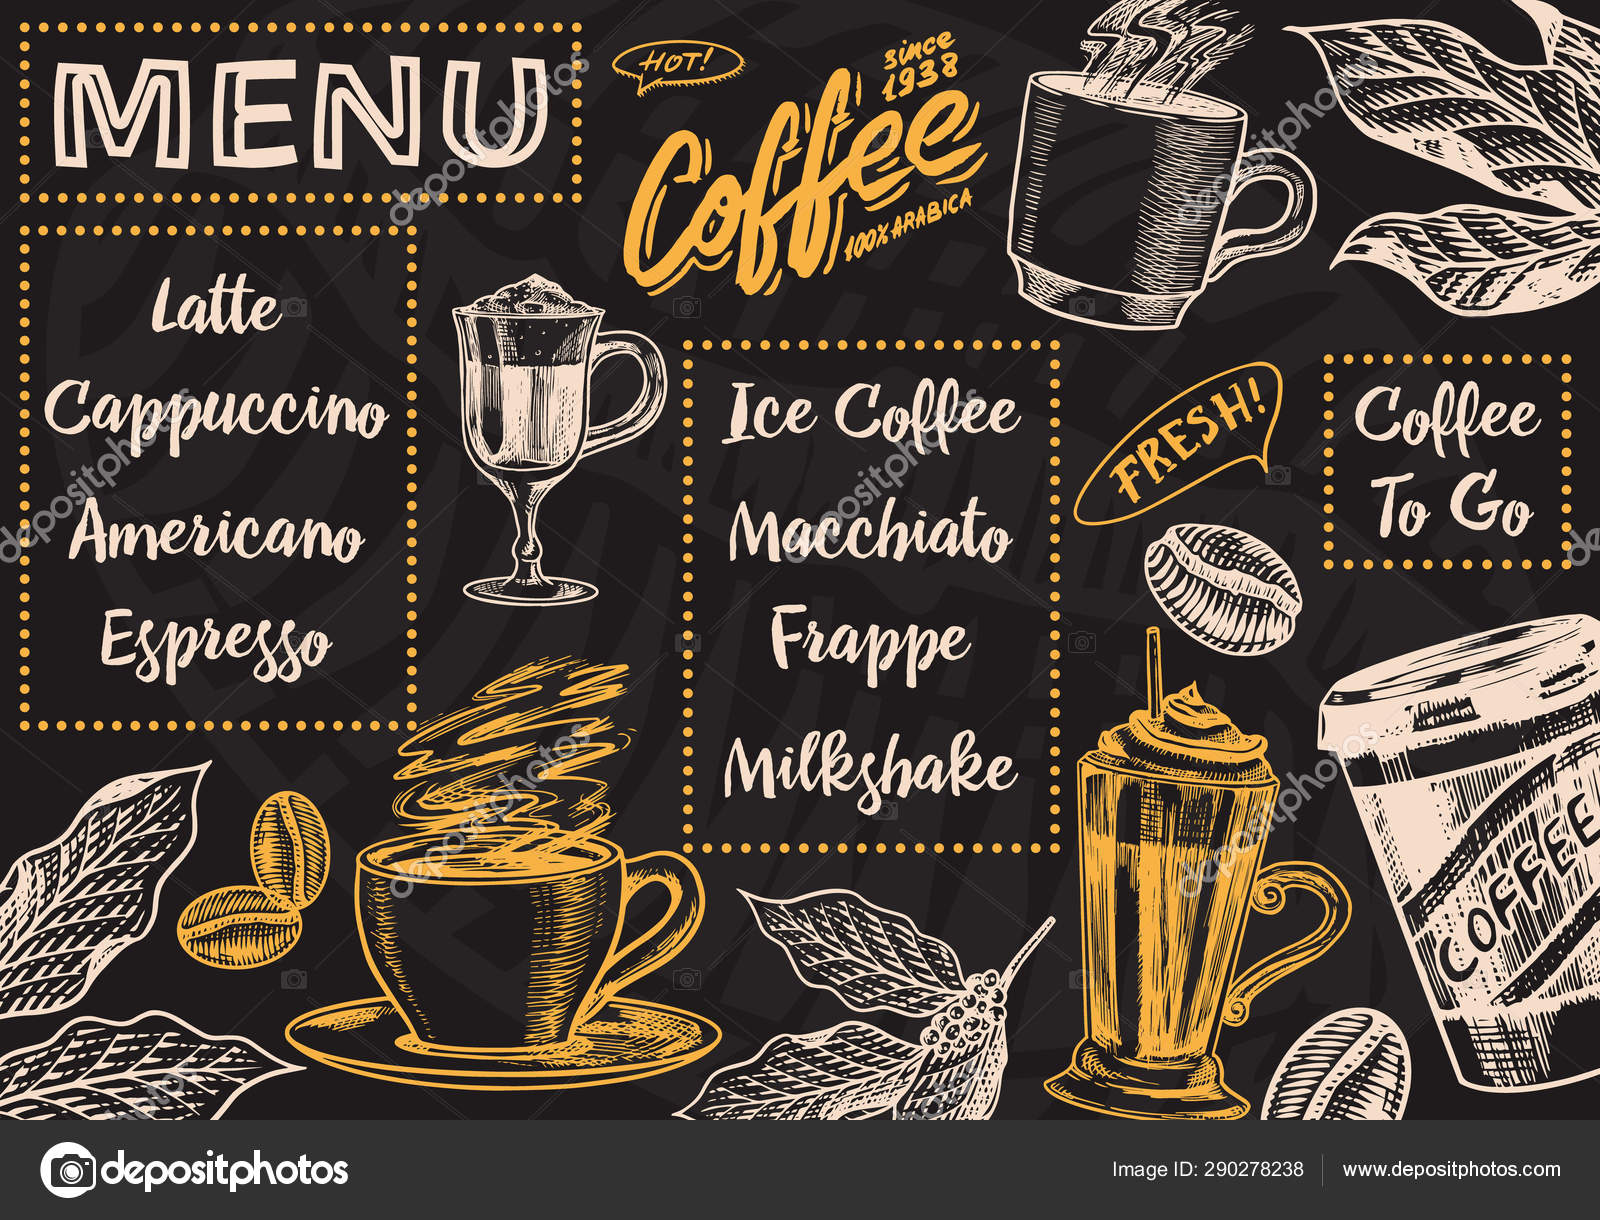 Thực đơn cà phê: Chúng tôi tự hào giới thiệu thực đơn cà phê đa dạng, từ cà phê đen đậm, nước ép trái cây cho đến cà phê latte sữa. Bạn còn có thể tùy chỉnh đồ uống theo sở thích cá nhân. Hãy xem thực đơn cà phê của chúng tôi để tìm kiếm đồ uống yêu thích của bạn.